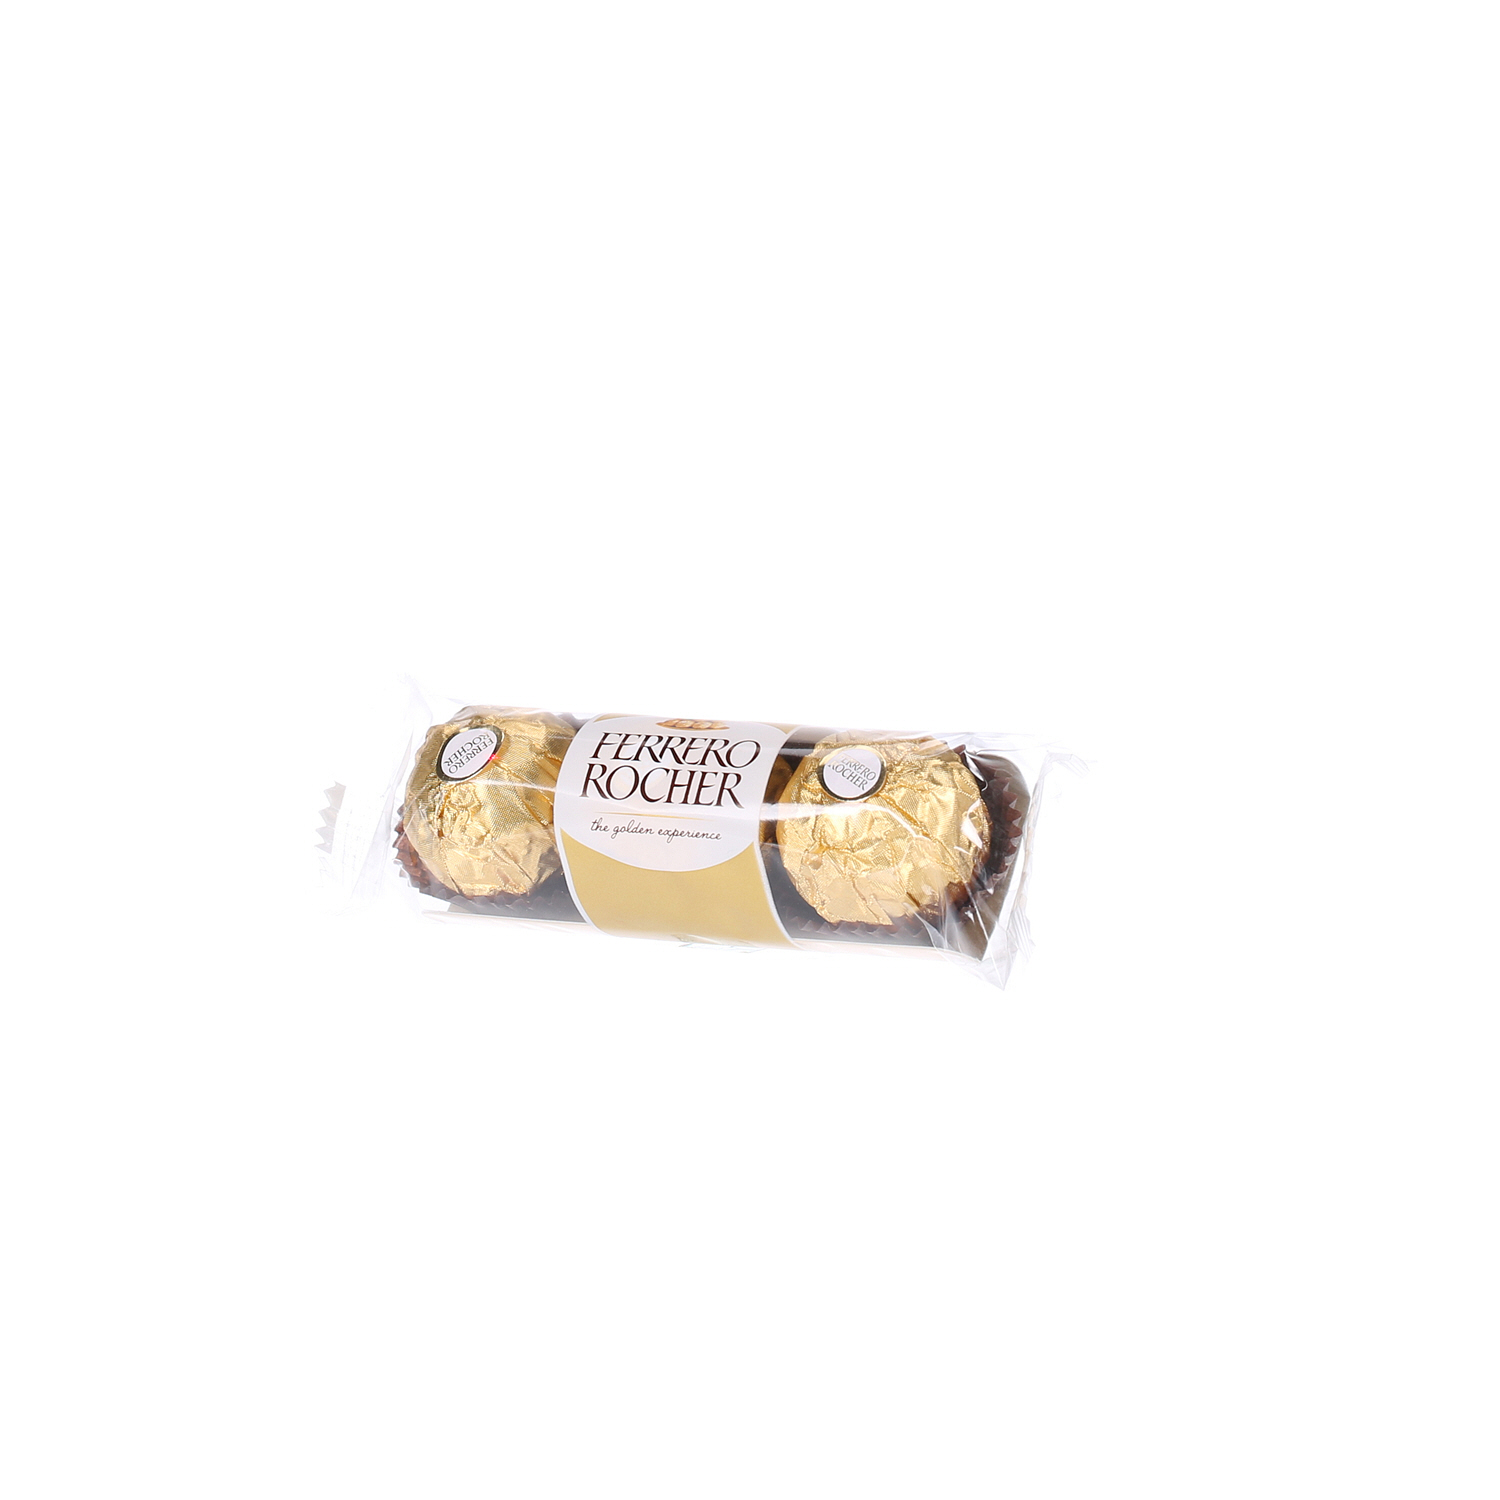 Ferrero Rocher Chocolate 37.5 g × 3 Pack